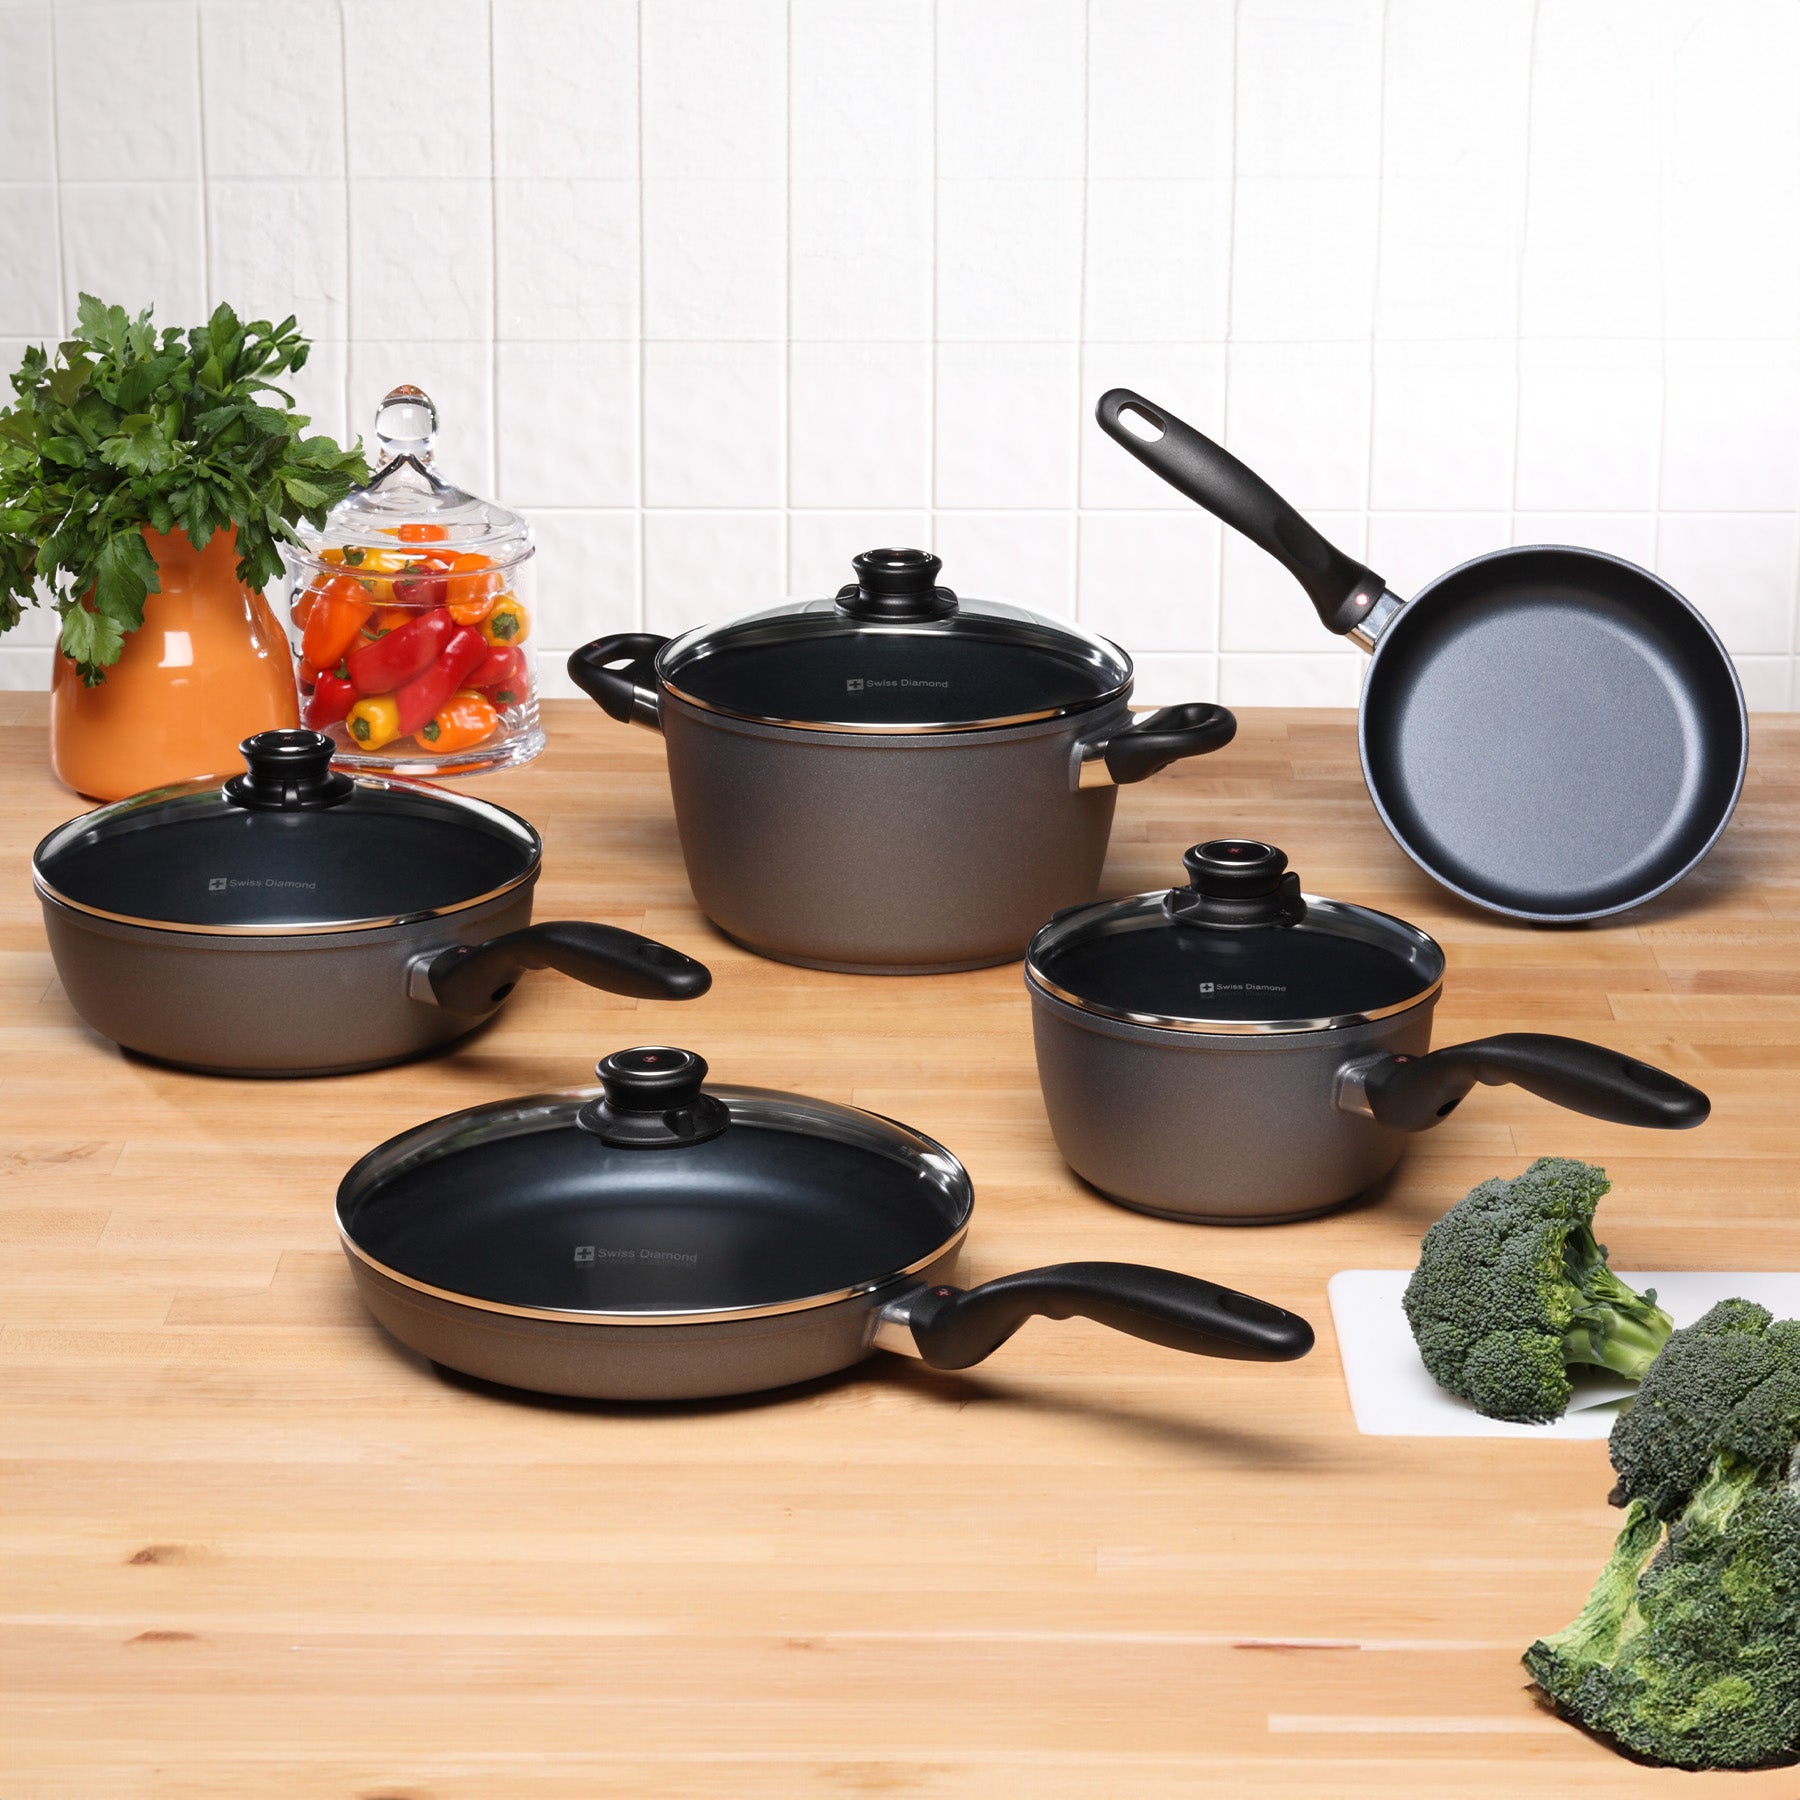 HD Nonstick 9-Piece Set - Kitchen Essentials Set in use on kitchen counter